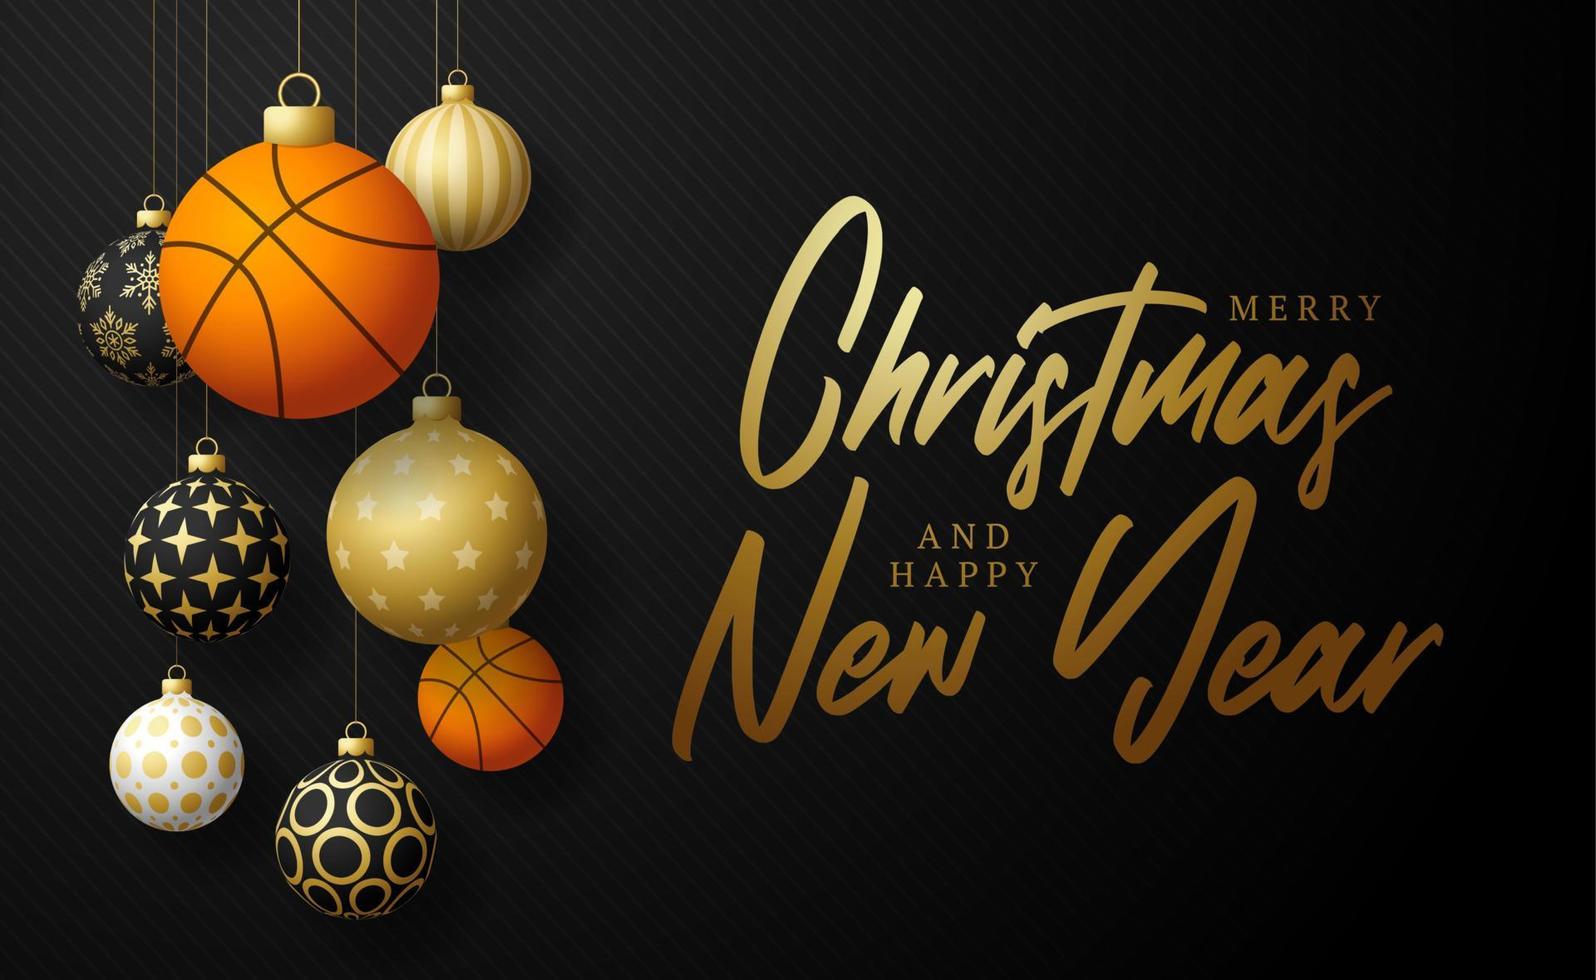 Basketball-Weihnachtskarte. frohe weihnachten sportgrußkarte. Hängen Sie an einem Thread-Basketballball als Weihnachtsball und goldener Kugel auf schwarzem horizontalem Hintergrund. Sport-Vektor-Illustration. vektor